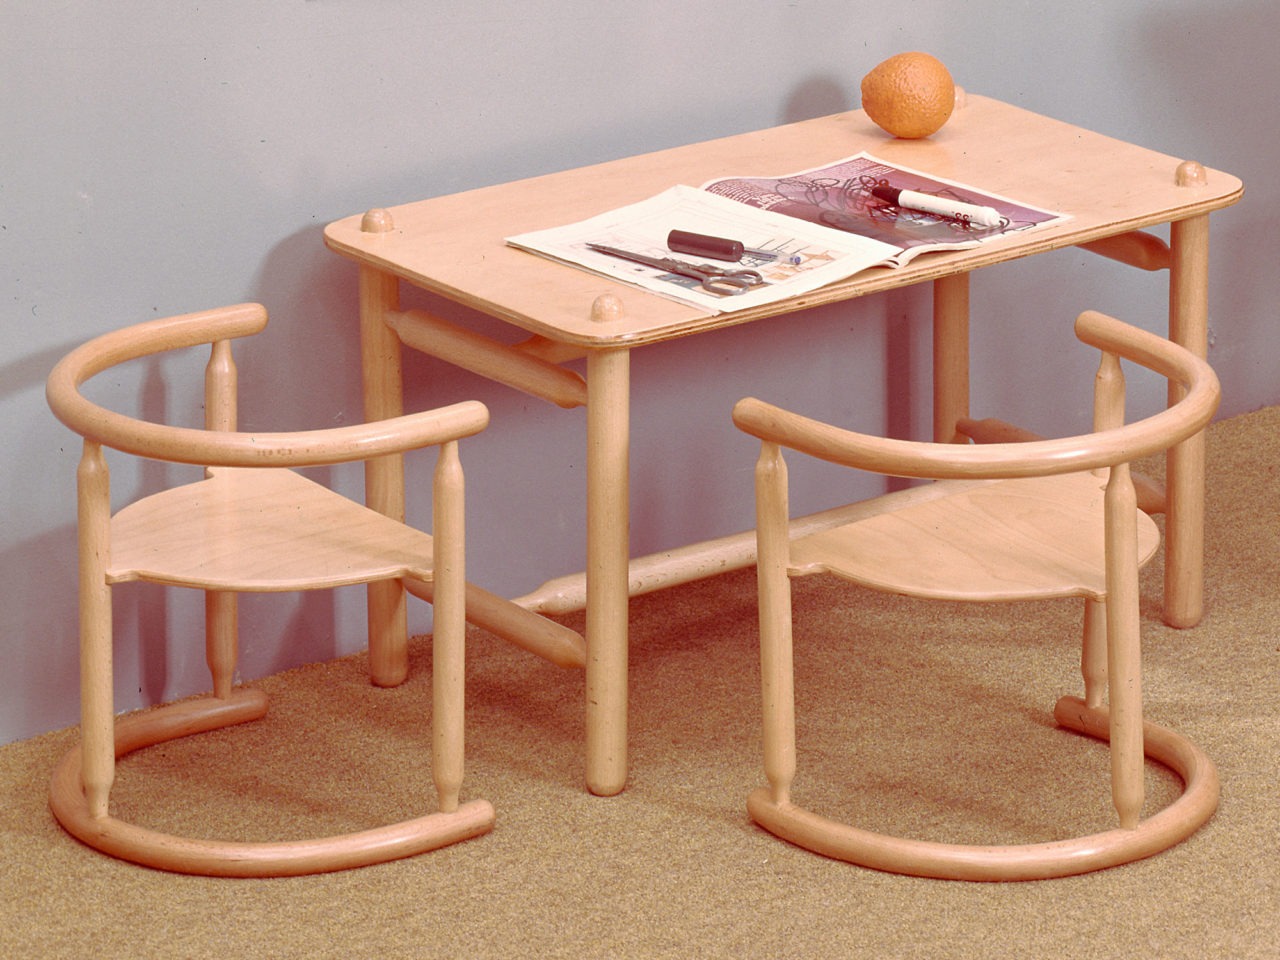 Ett bord och två stolar i barnstorlek, helt gjorda i ljust trä. Stommar och detaljer i runda, mjuka former.